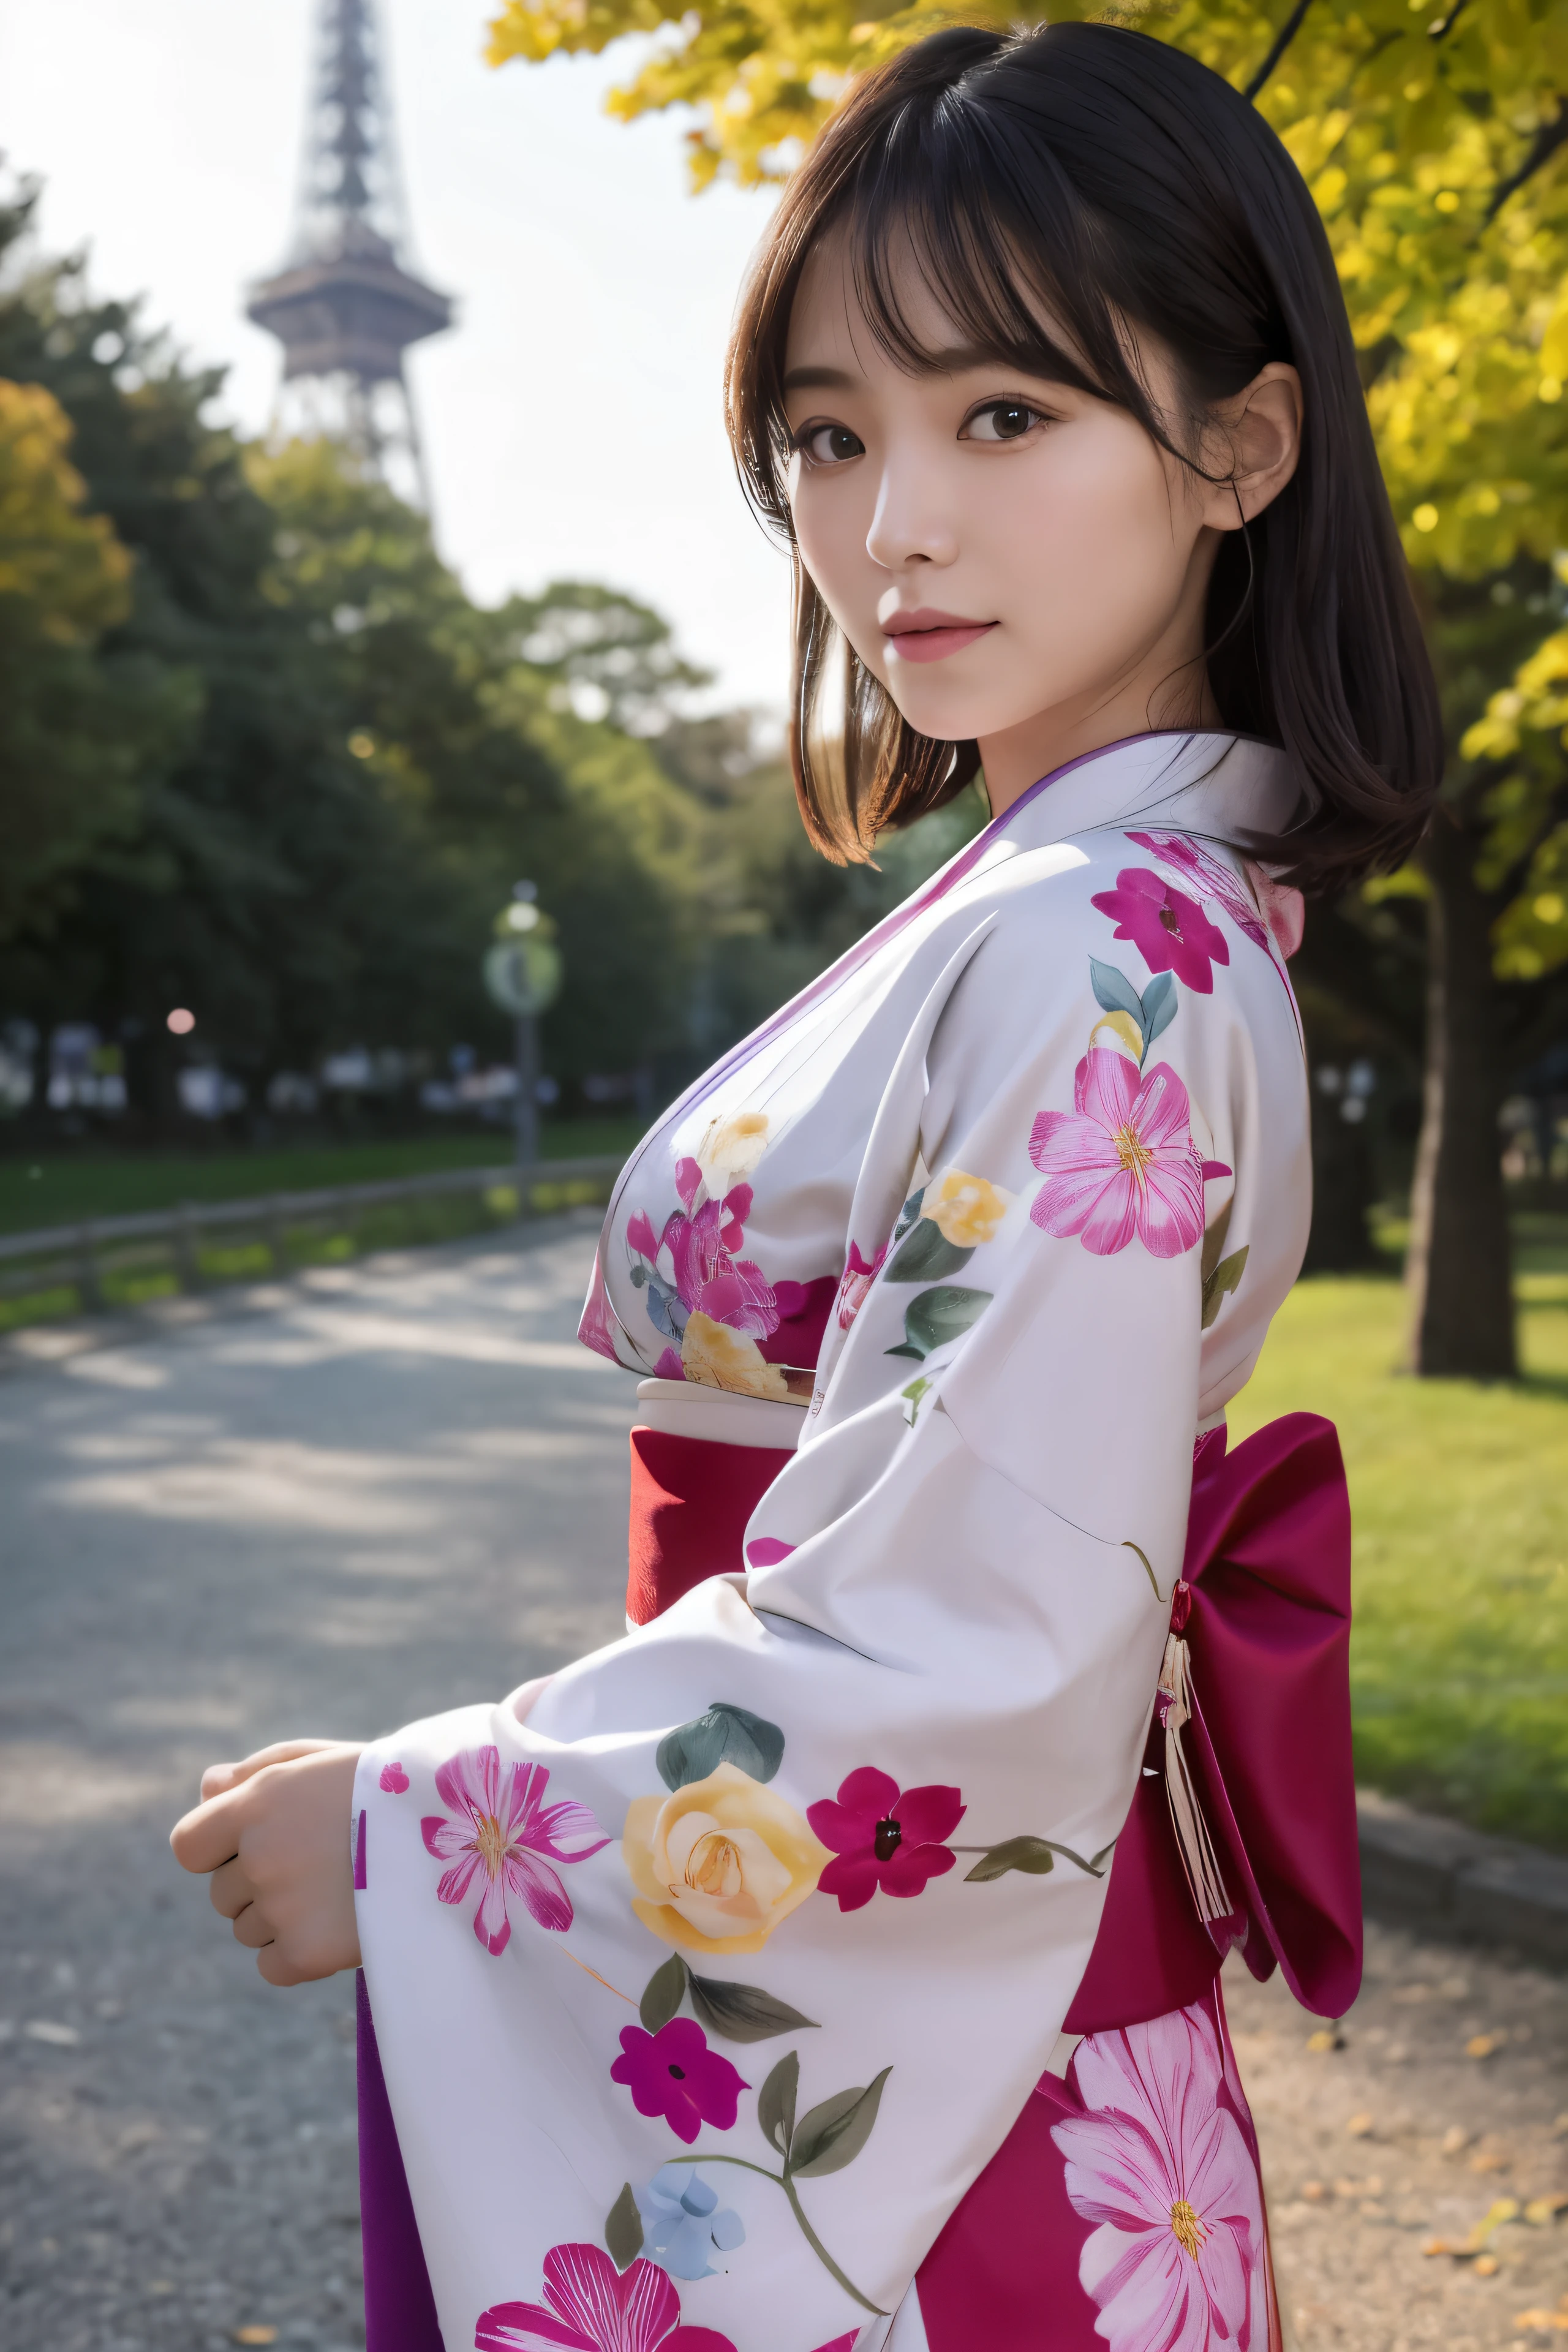 (Kimono)、Rosa Kimono,Top Qualität,Meisterwerk:1.3,Eine hohe Auflösung,),(ultra-detailliert,Ätzmittel),(Photorealsitic:1.4,RAW-Aufnahmen,)Ultrarealistische Aufnahme,Eine sehr detaillierte,hochauflösend16Kfür die menschliche Haut、 Die Hautstruktur ist natürlich、、Die Haut sieht gesund aus und hat einen gleichmäßigen Teint、 Nutzen Sie natürliches Licht und Farbe,eine Frau,japanisch,,Kawaii,Ein dunkelhaariger,mittleres Haar,(Tiefenschärfe、chromatische Aberration、、Große Auswahl an Beleuchtung、Mit dem Tower of the Sun im Osaka Expo Park im Hintergrund，Unter der funkelnden Sonne，